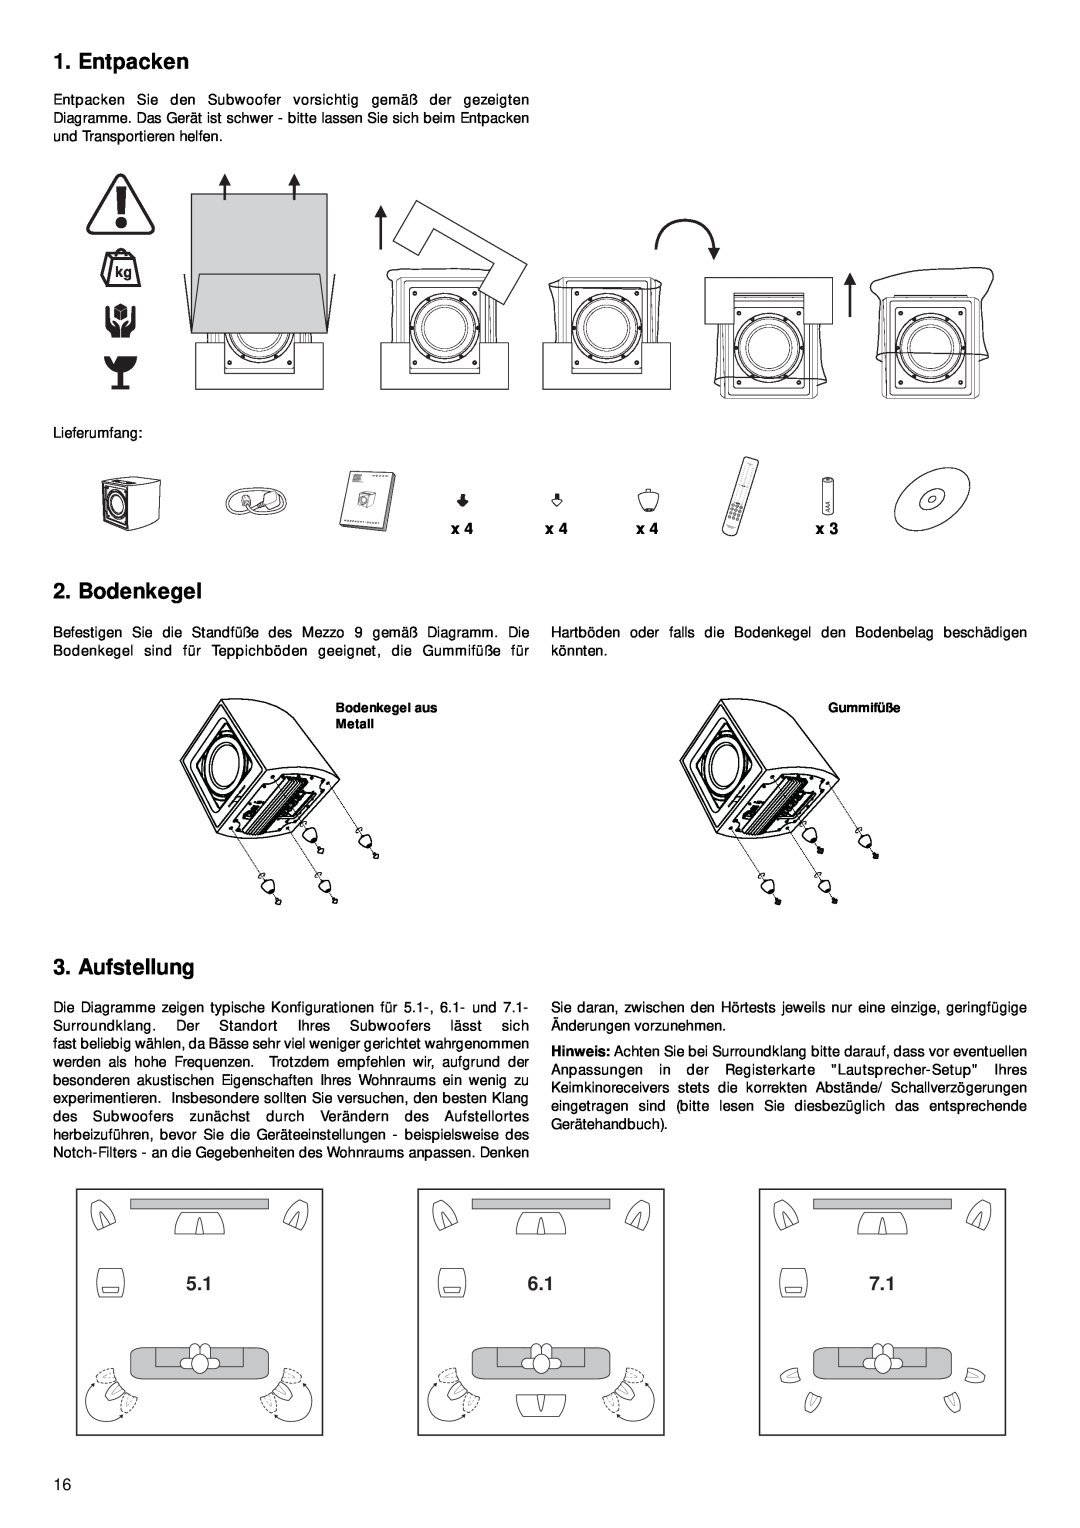 Mordaunt-Short 9 manual Entpacken, Bodenkegel, Aufstellung 